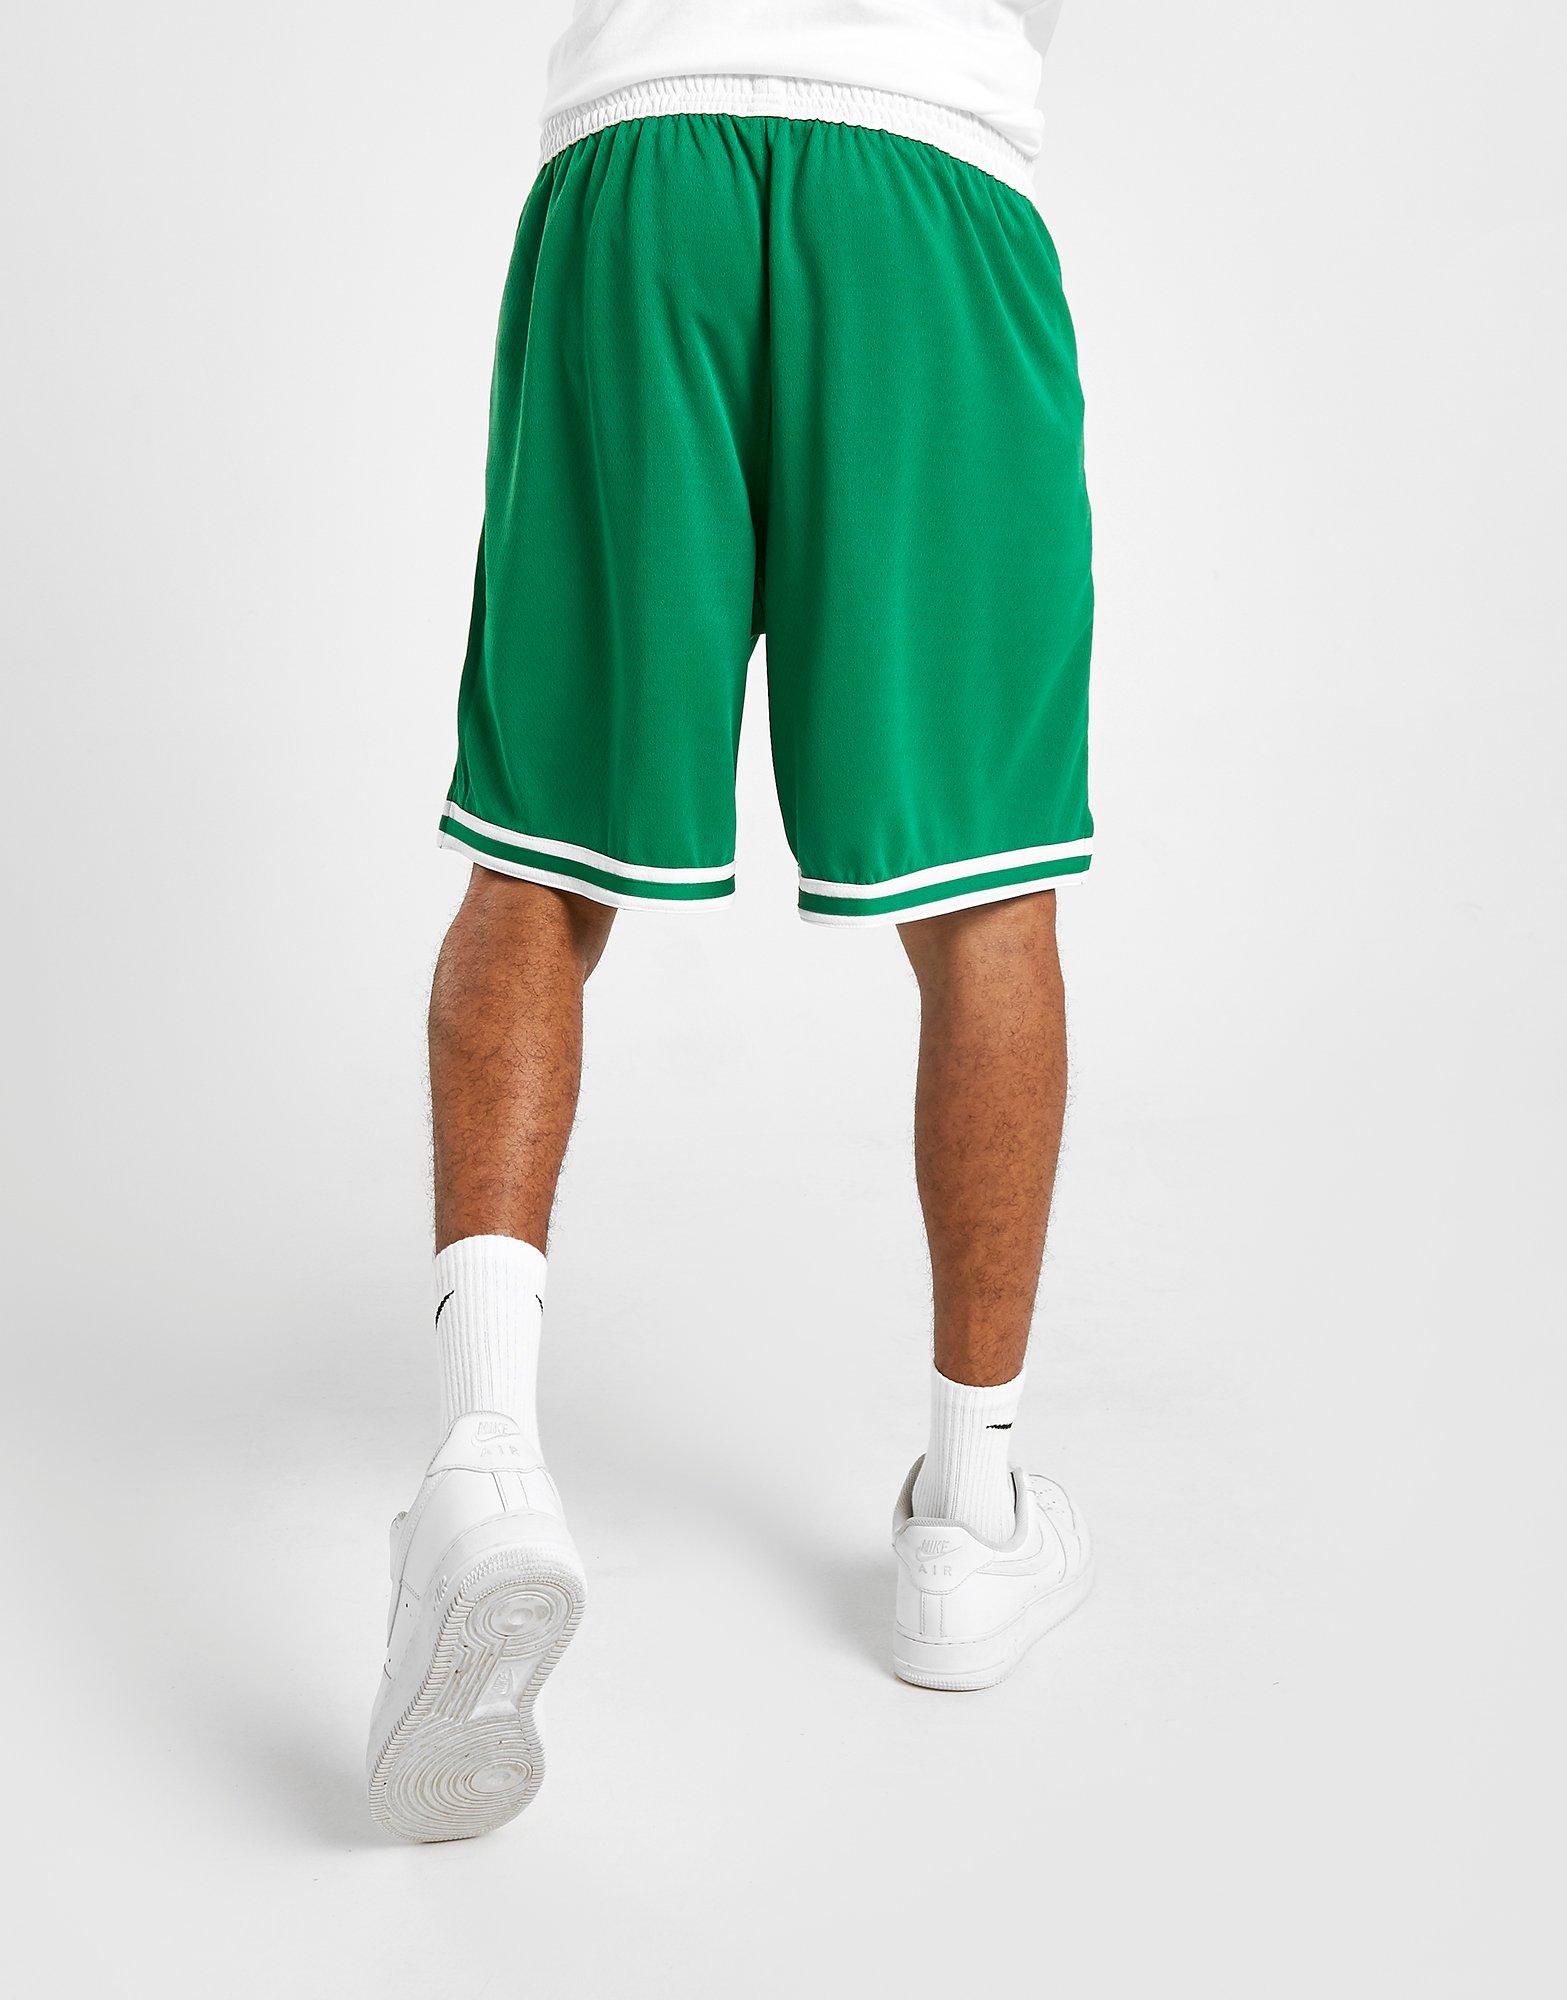 The celtics in the NBA's shorts green gray shirt tatooine's jay